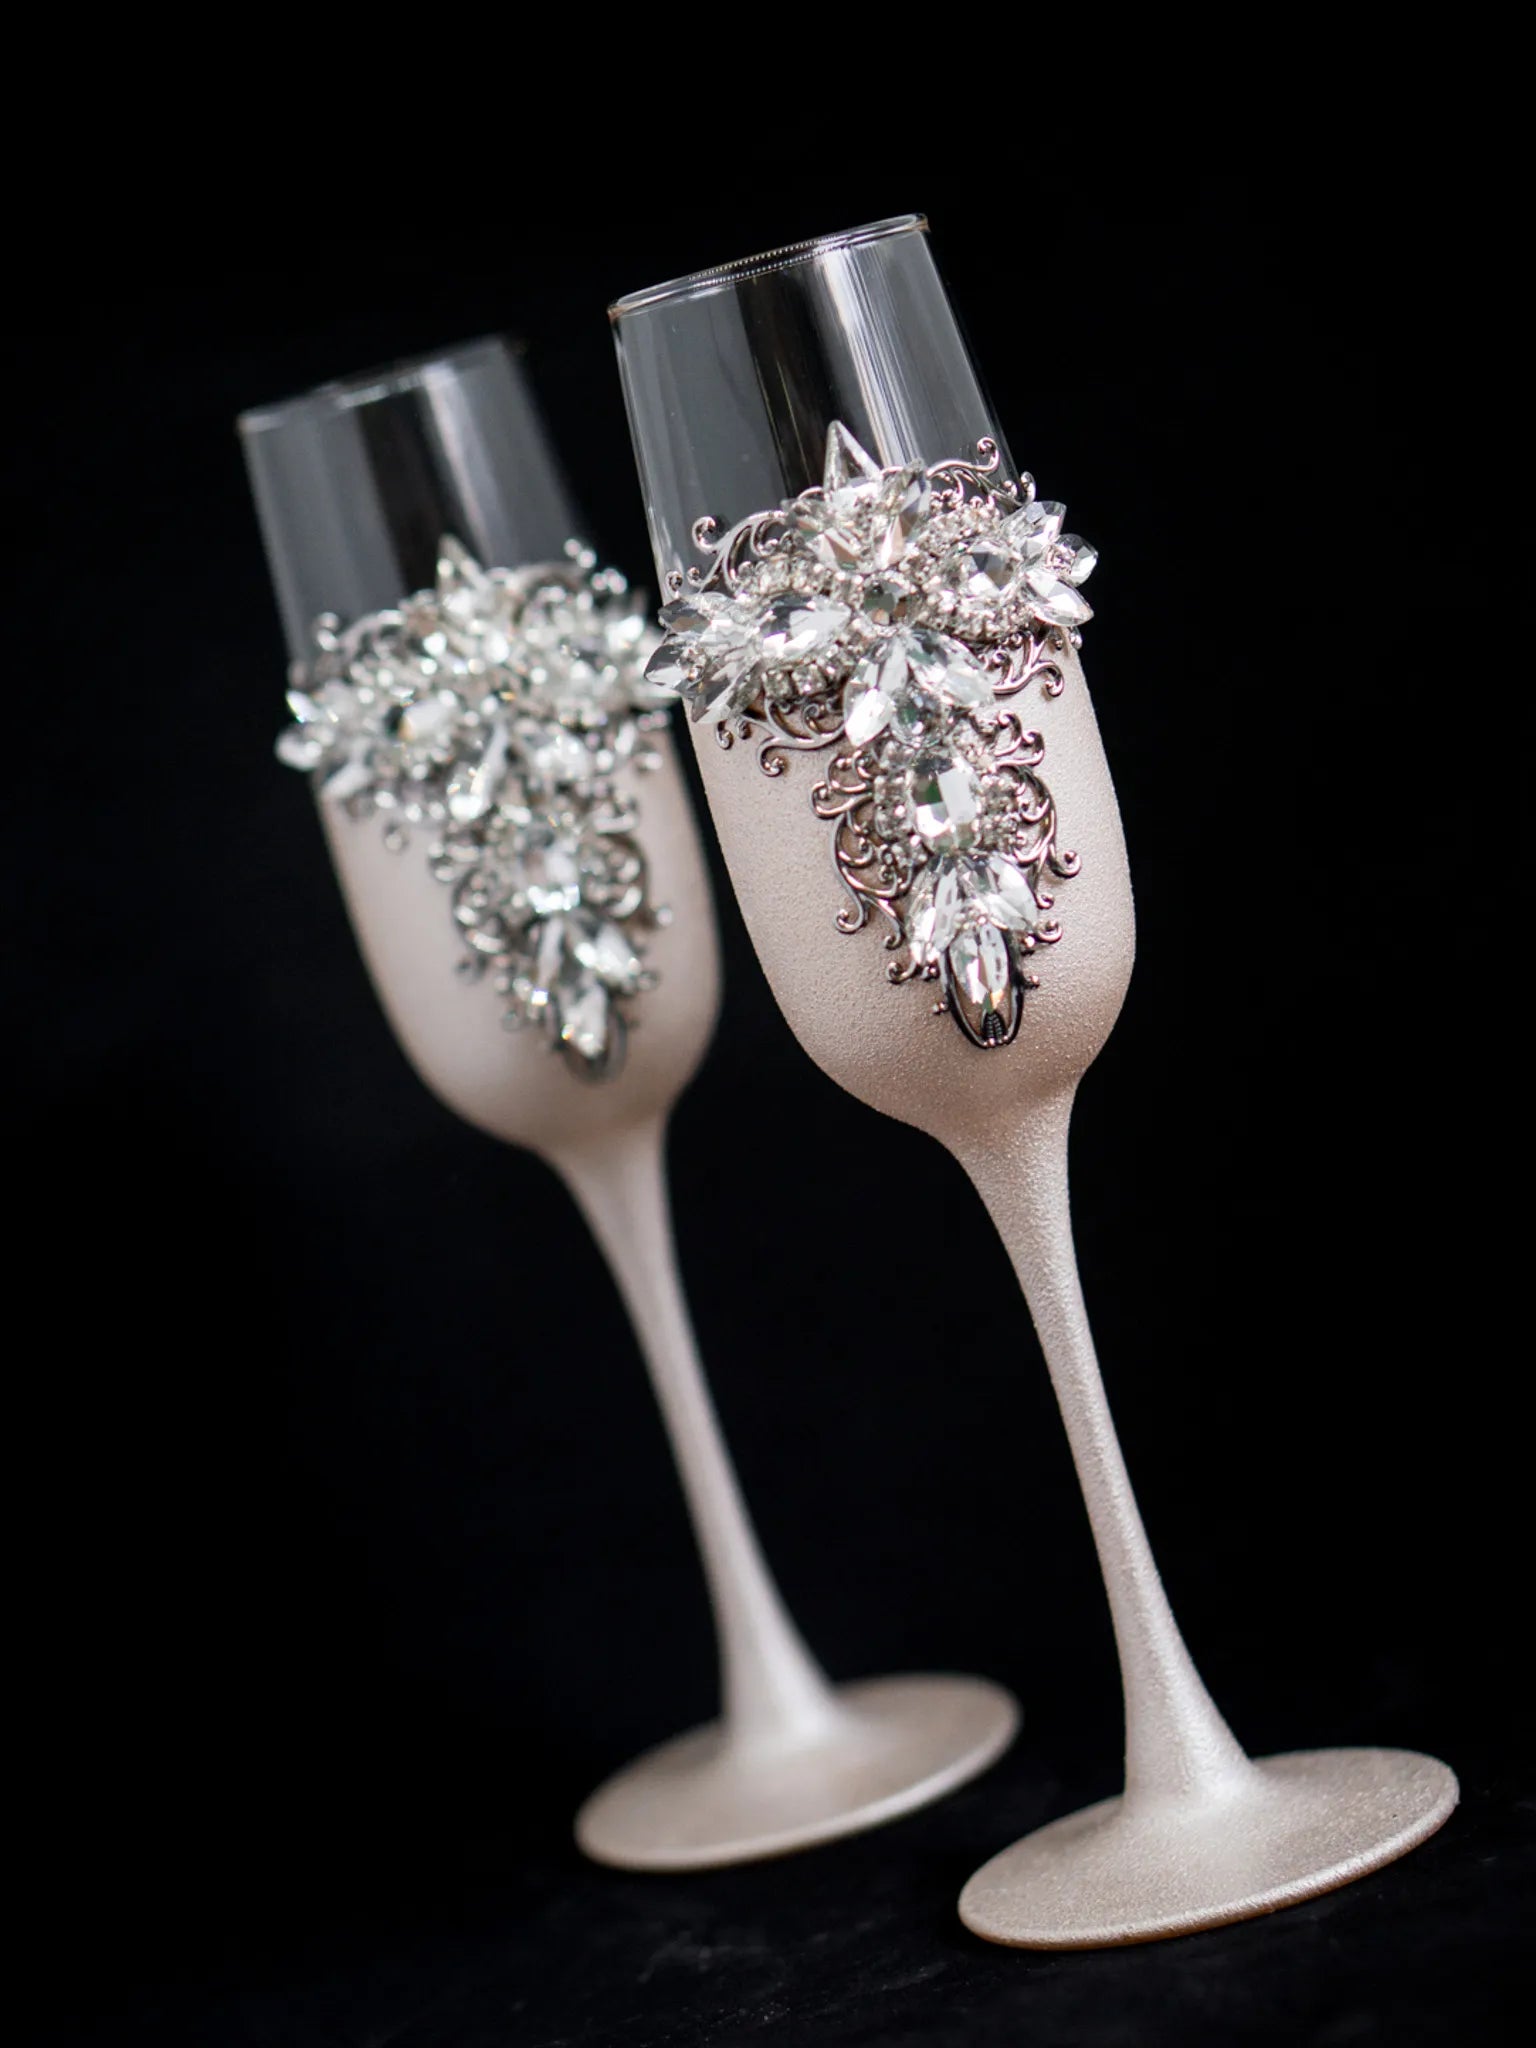 Engraved ivory wedding toasting glasses